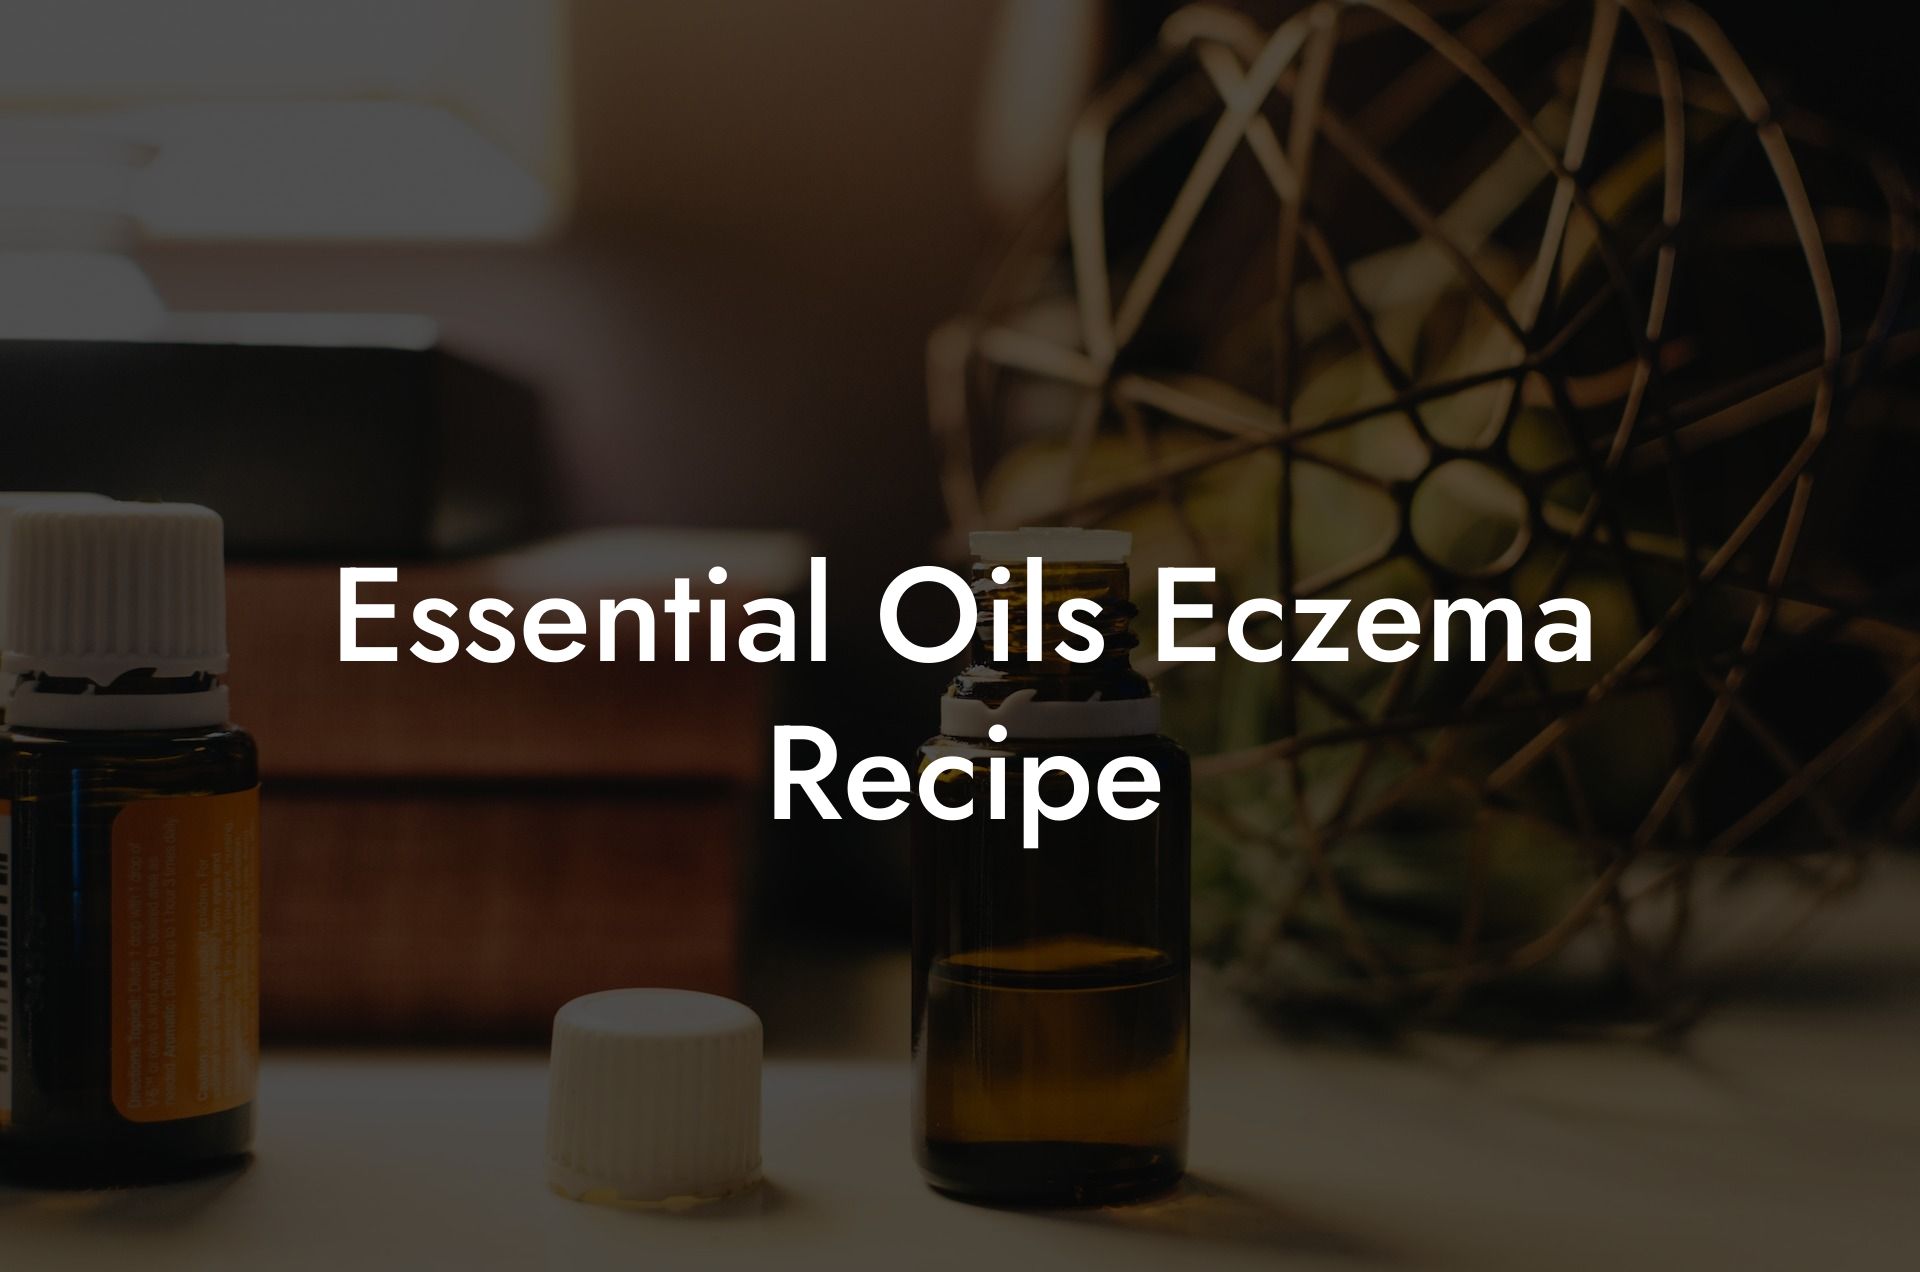 Essential Oils Eczema Recipe